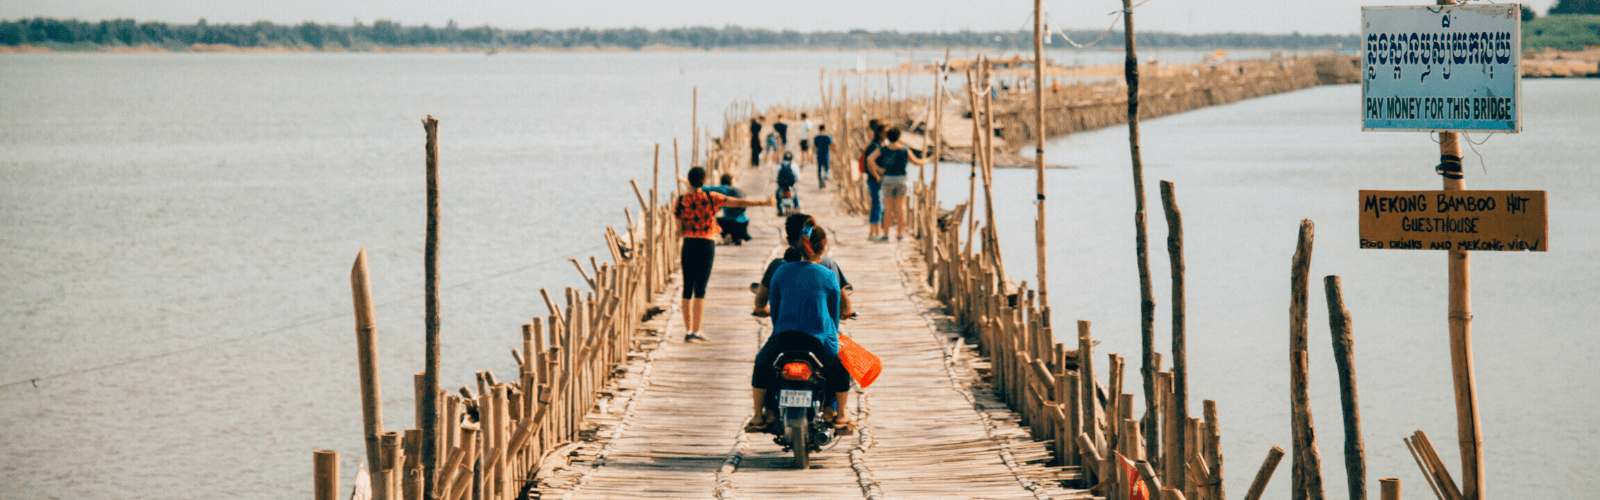 Le Vietnam : un voyage solidaire au cœur des minorités ethniques Double Sens